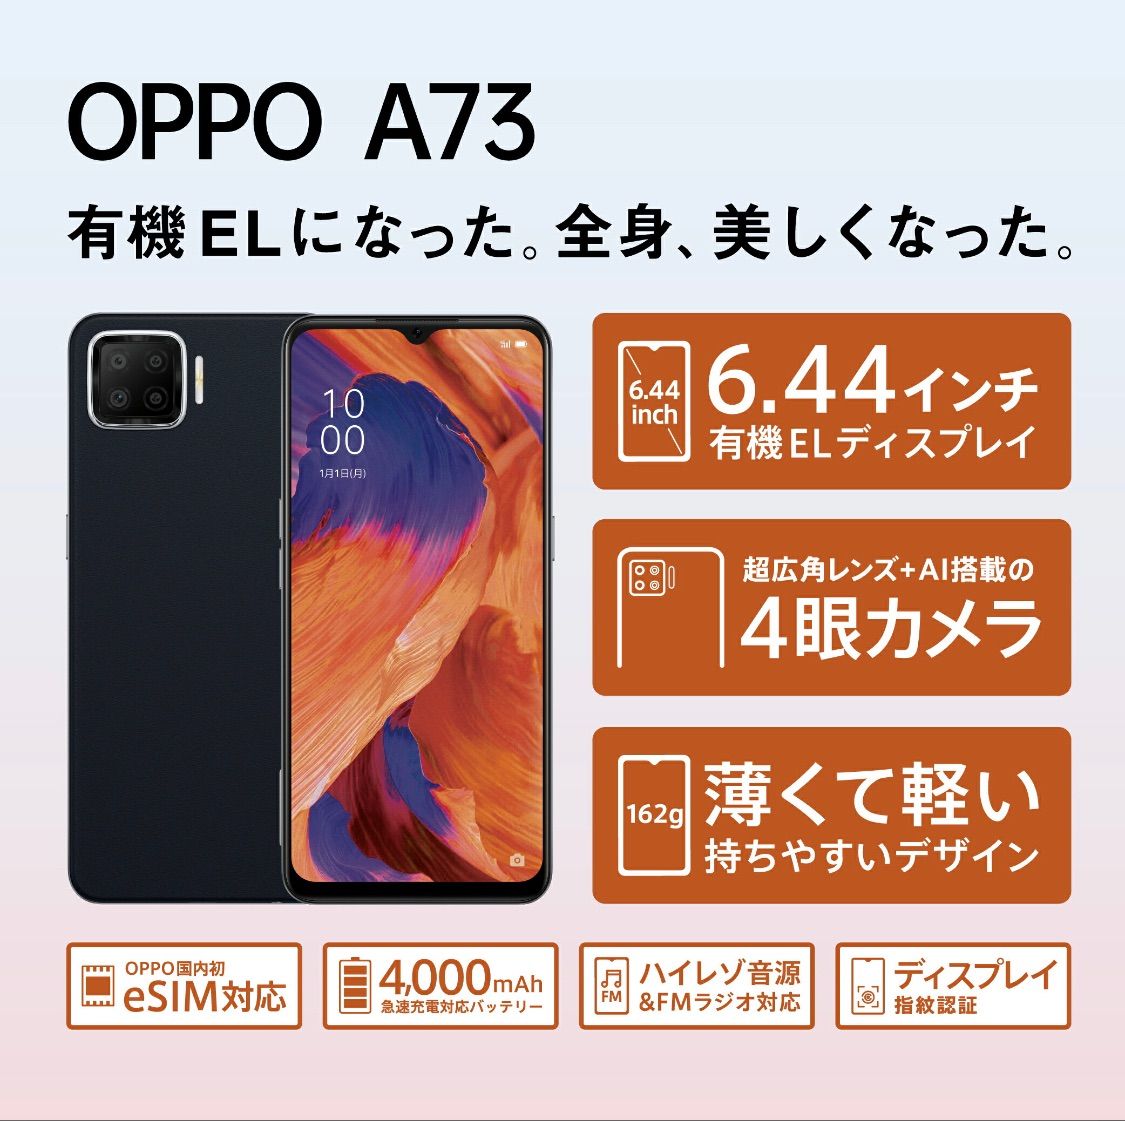 OPPO A73 ネービーブルー【未開封品】-